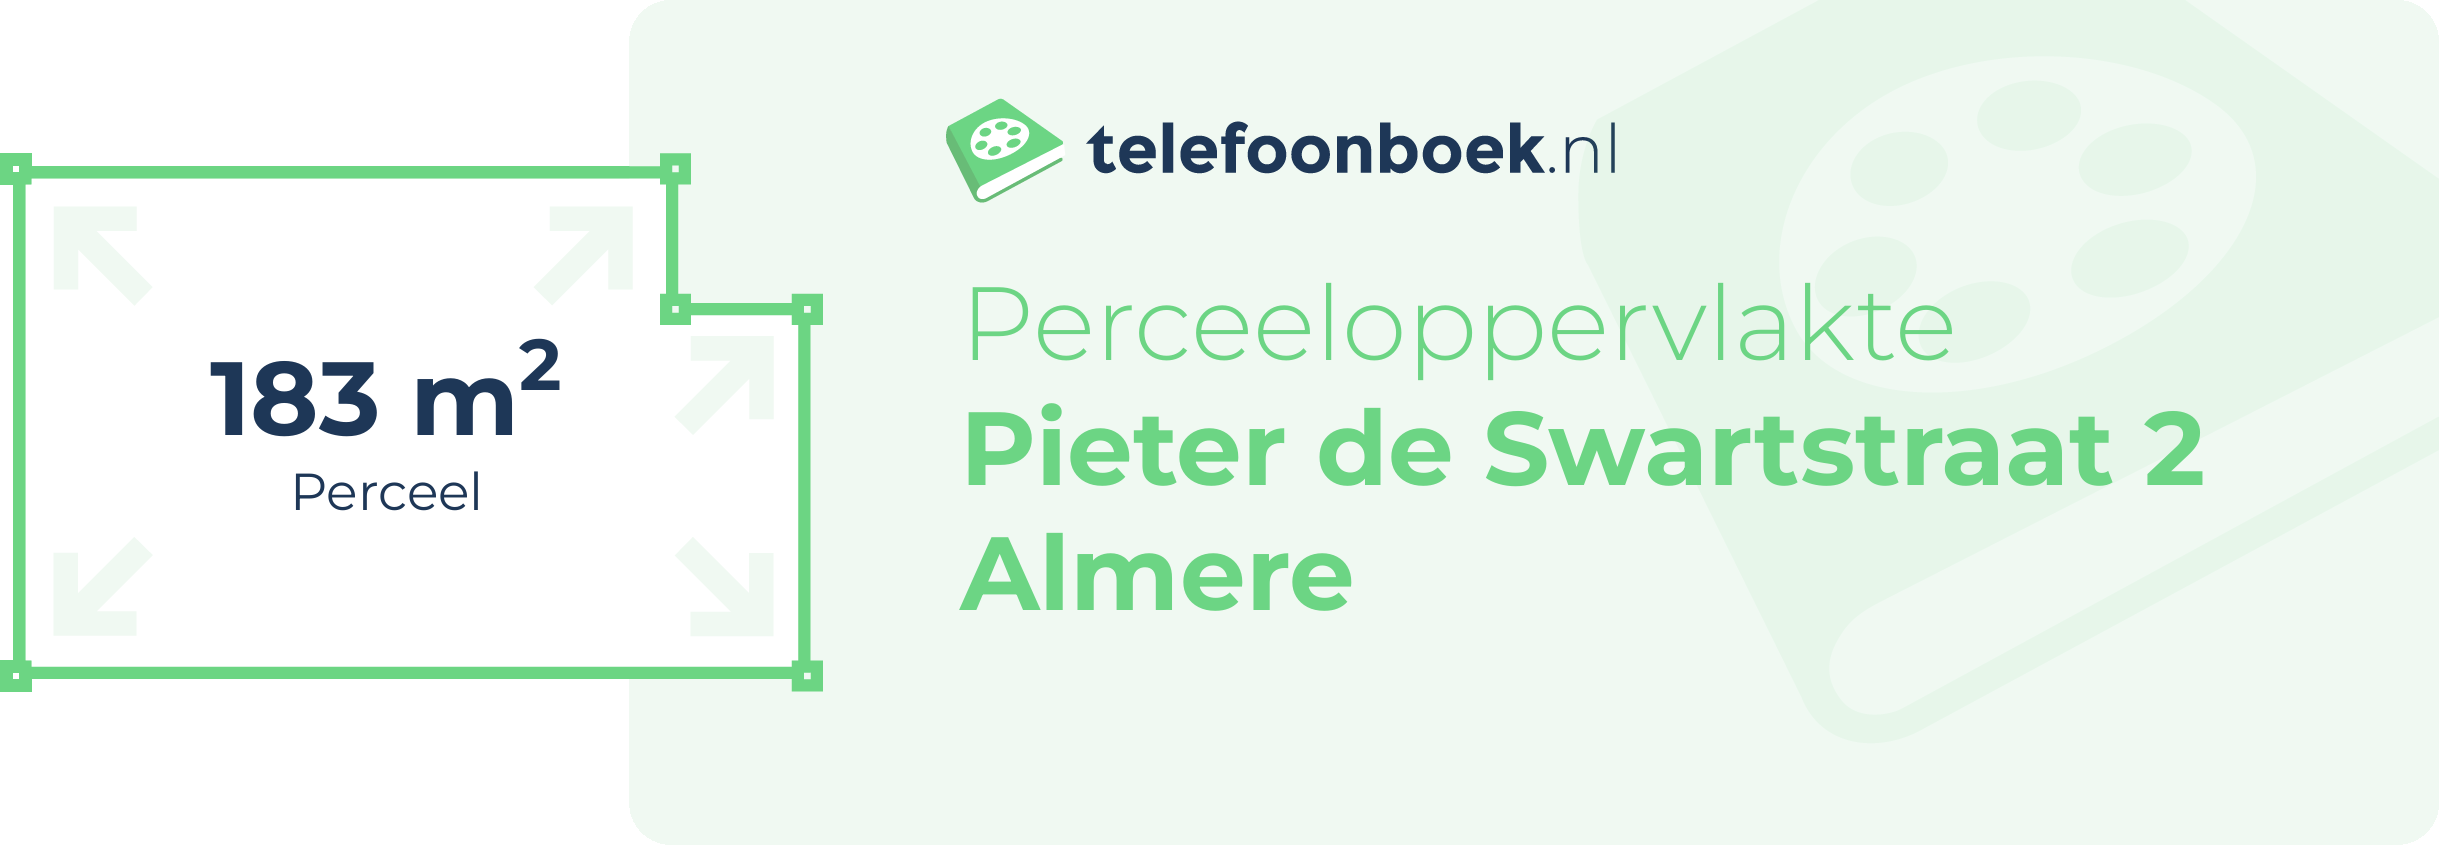 Perceeloppervlakte Pieter De Swartstraat 2 Almere